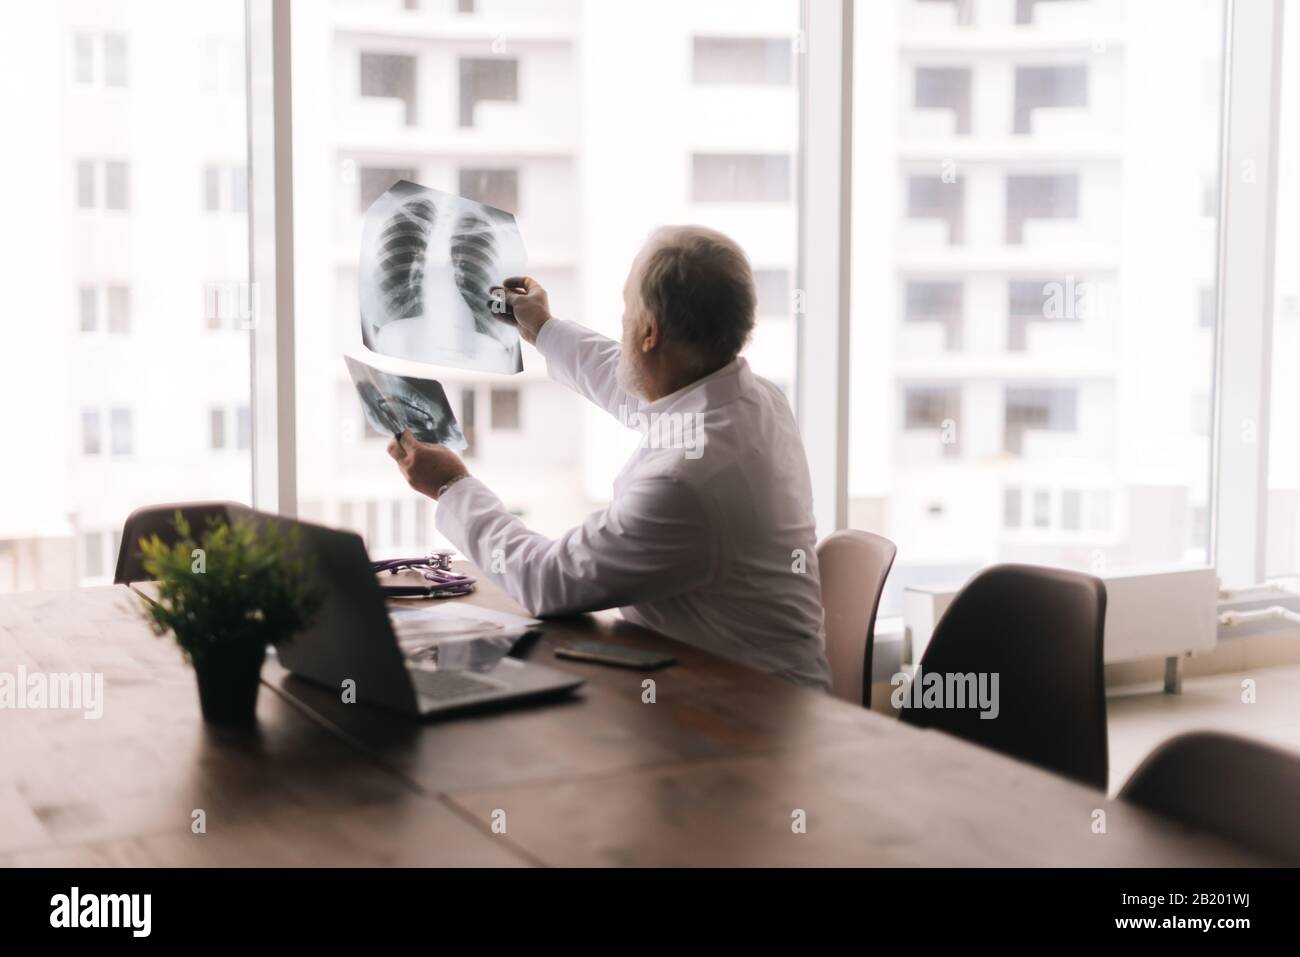 Männlicher Erwachsener, der Röntgen- und MRT-Scan an einem Tisch gegen großes Fenster untersucht Stockfoto